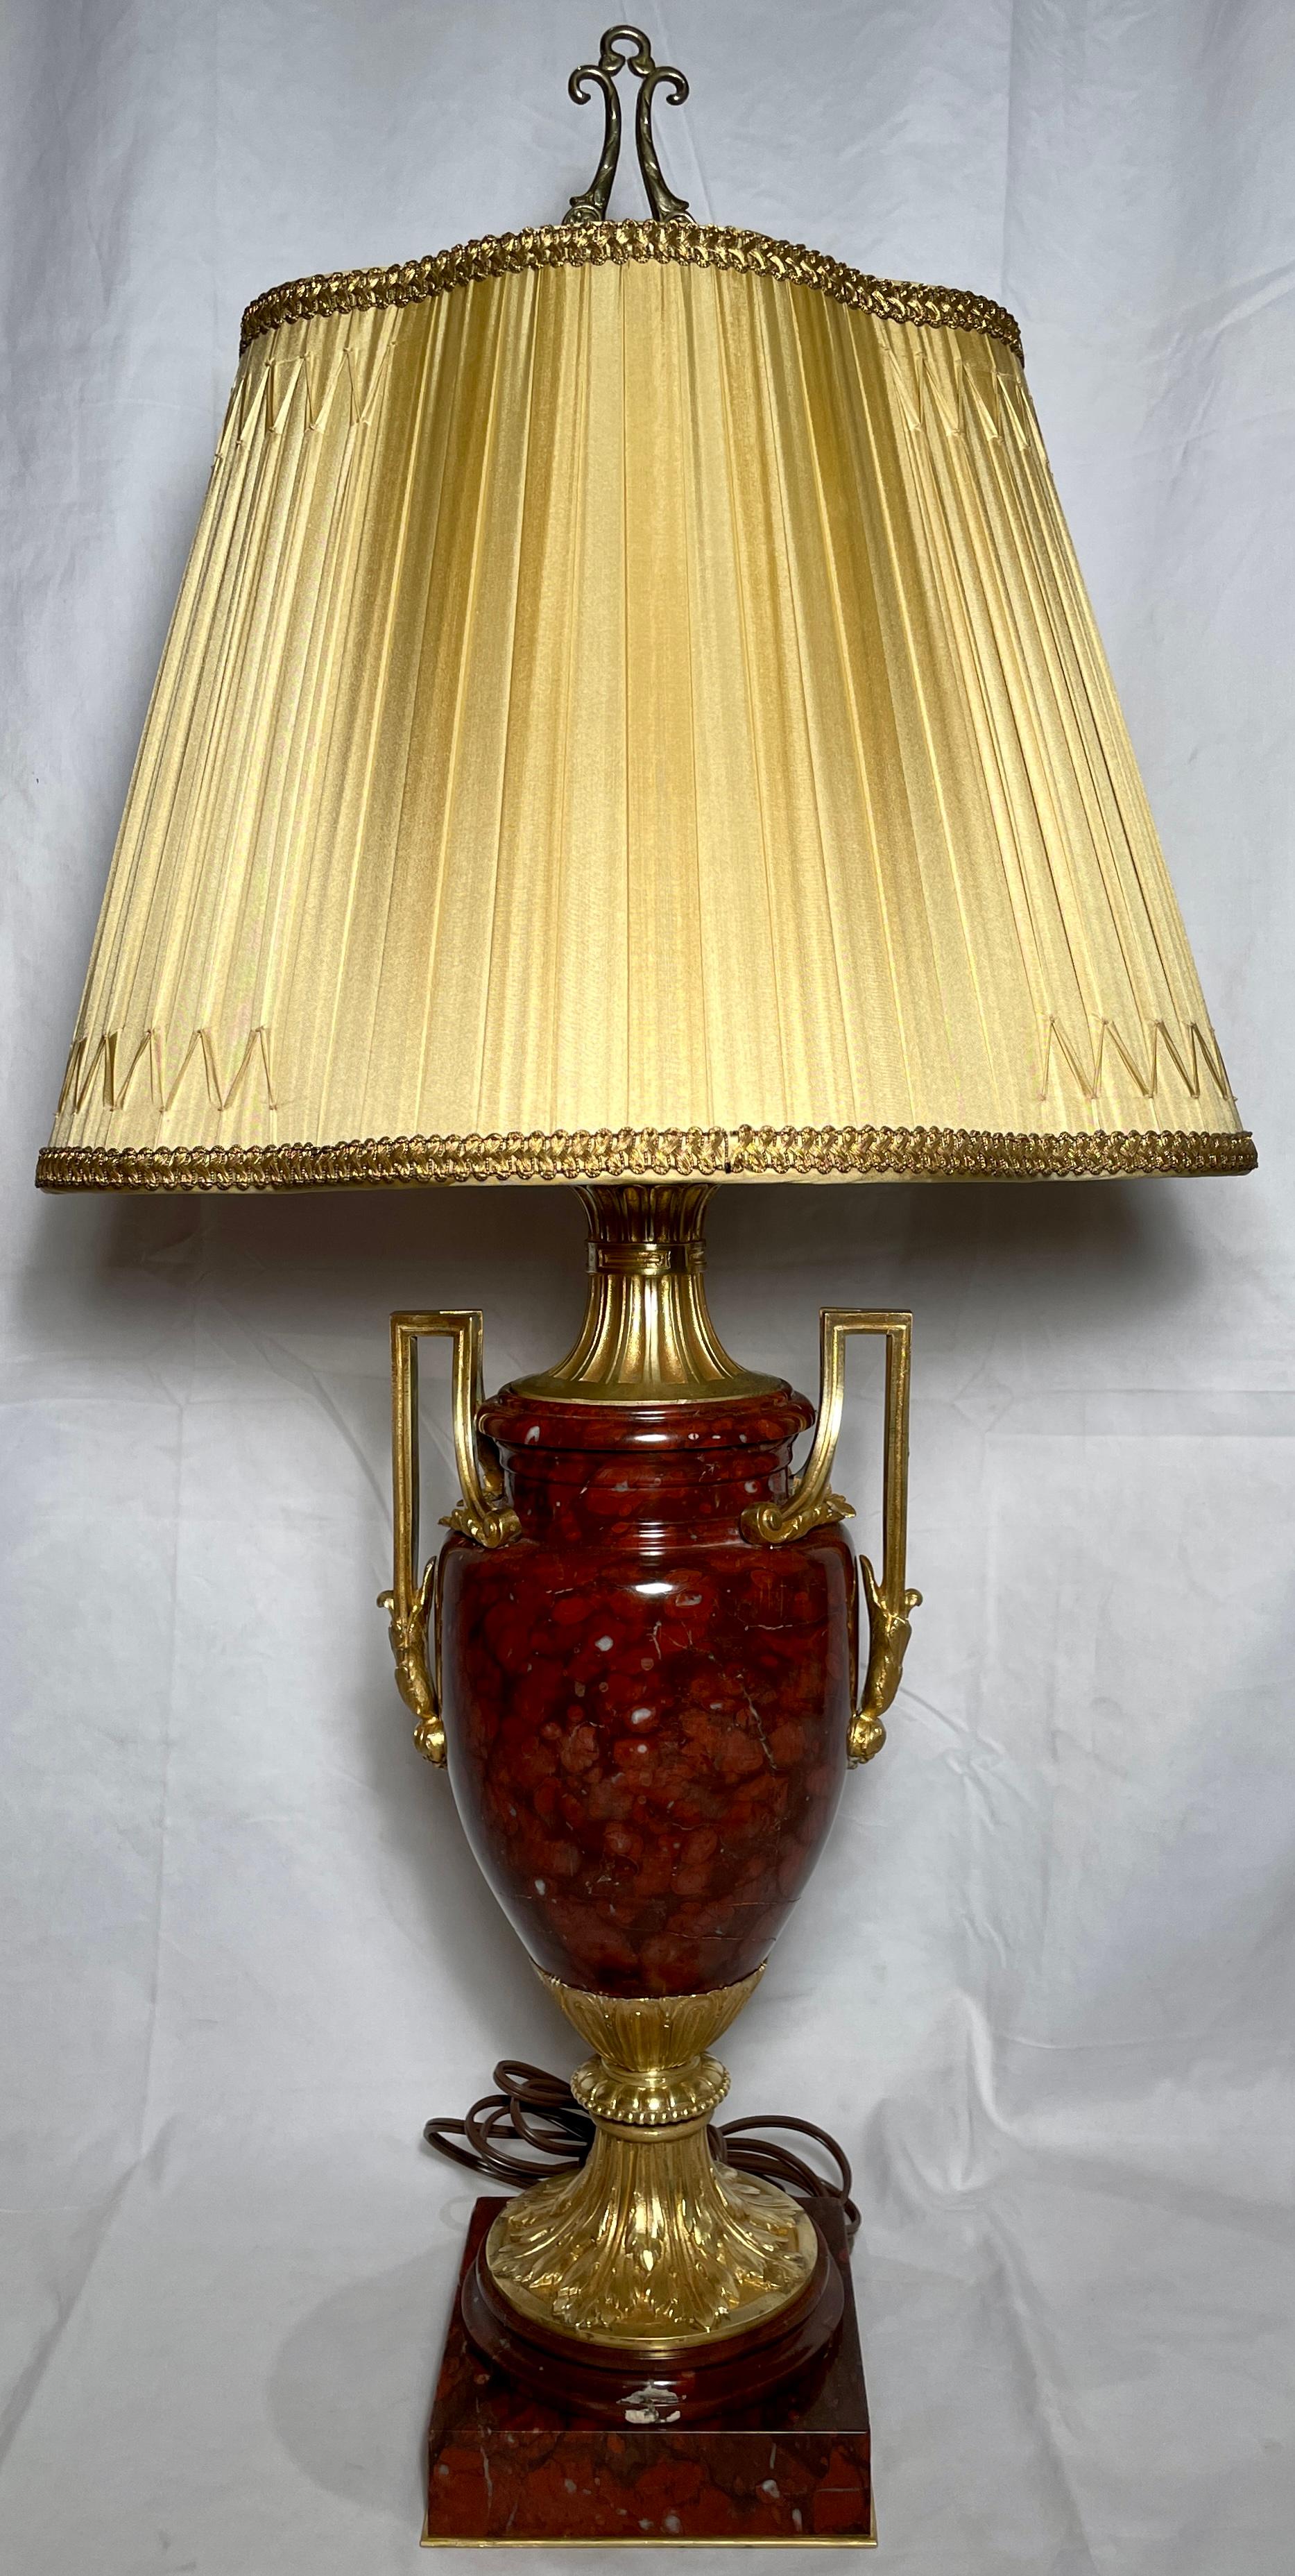 Paire de lampes anciennes de style classique Napoléon III en marbre rouge et bronze doré avec des abat-jour en soie faits à la main, vers 1875-1885. 